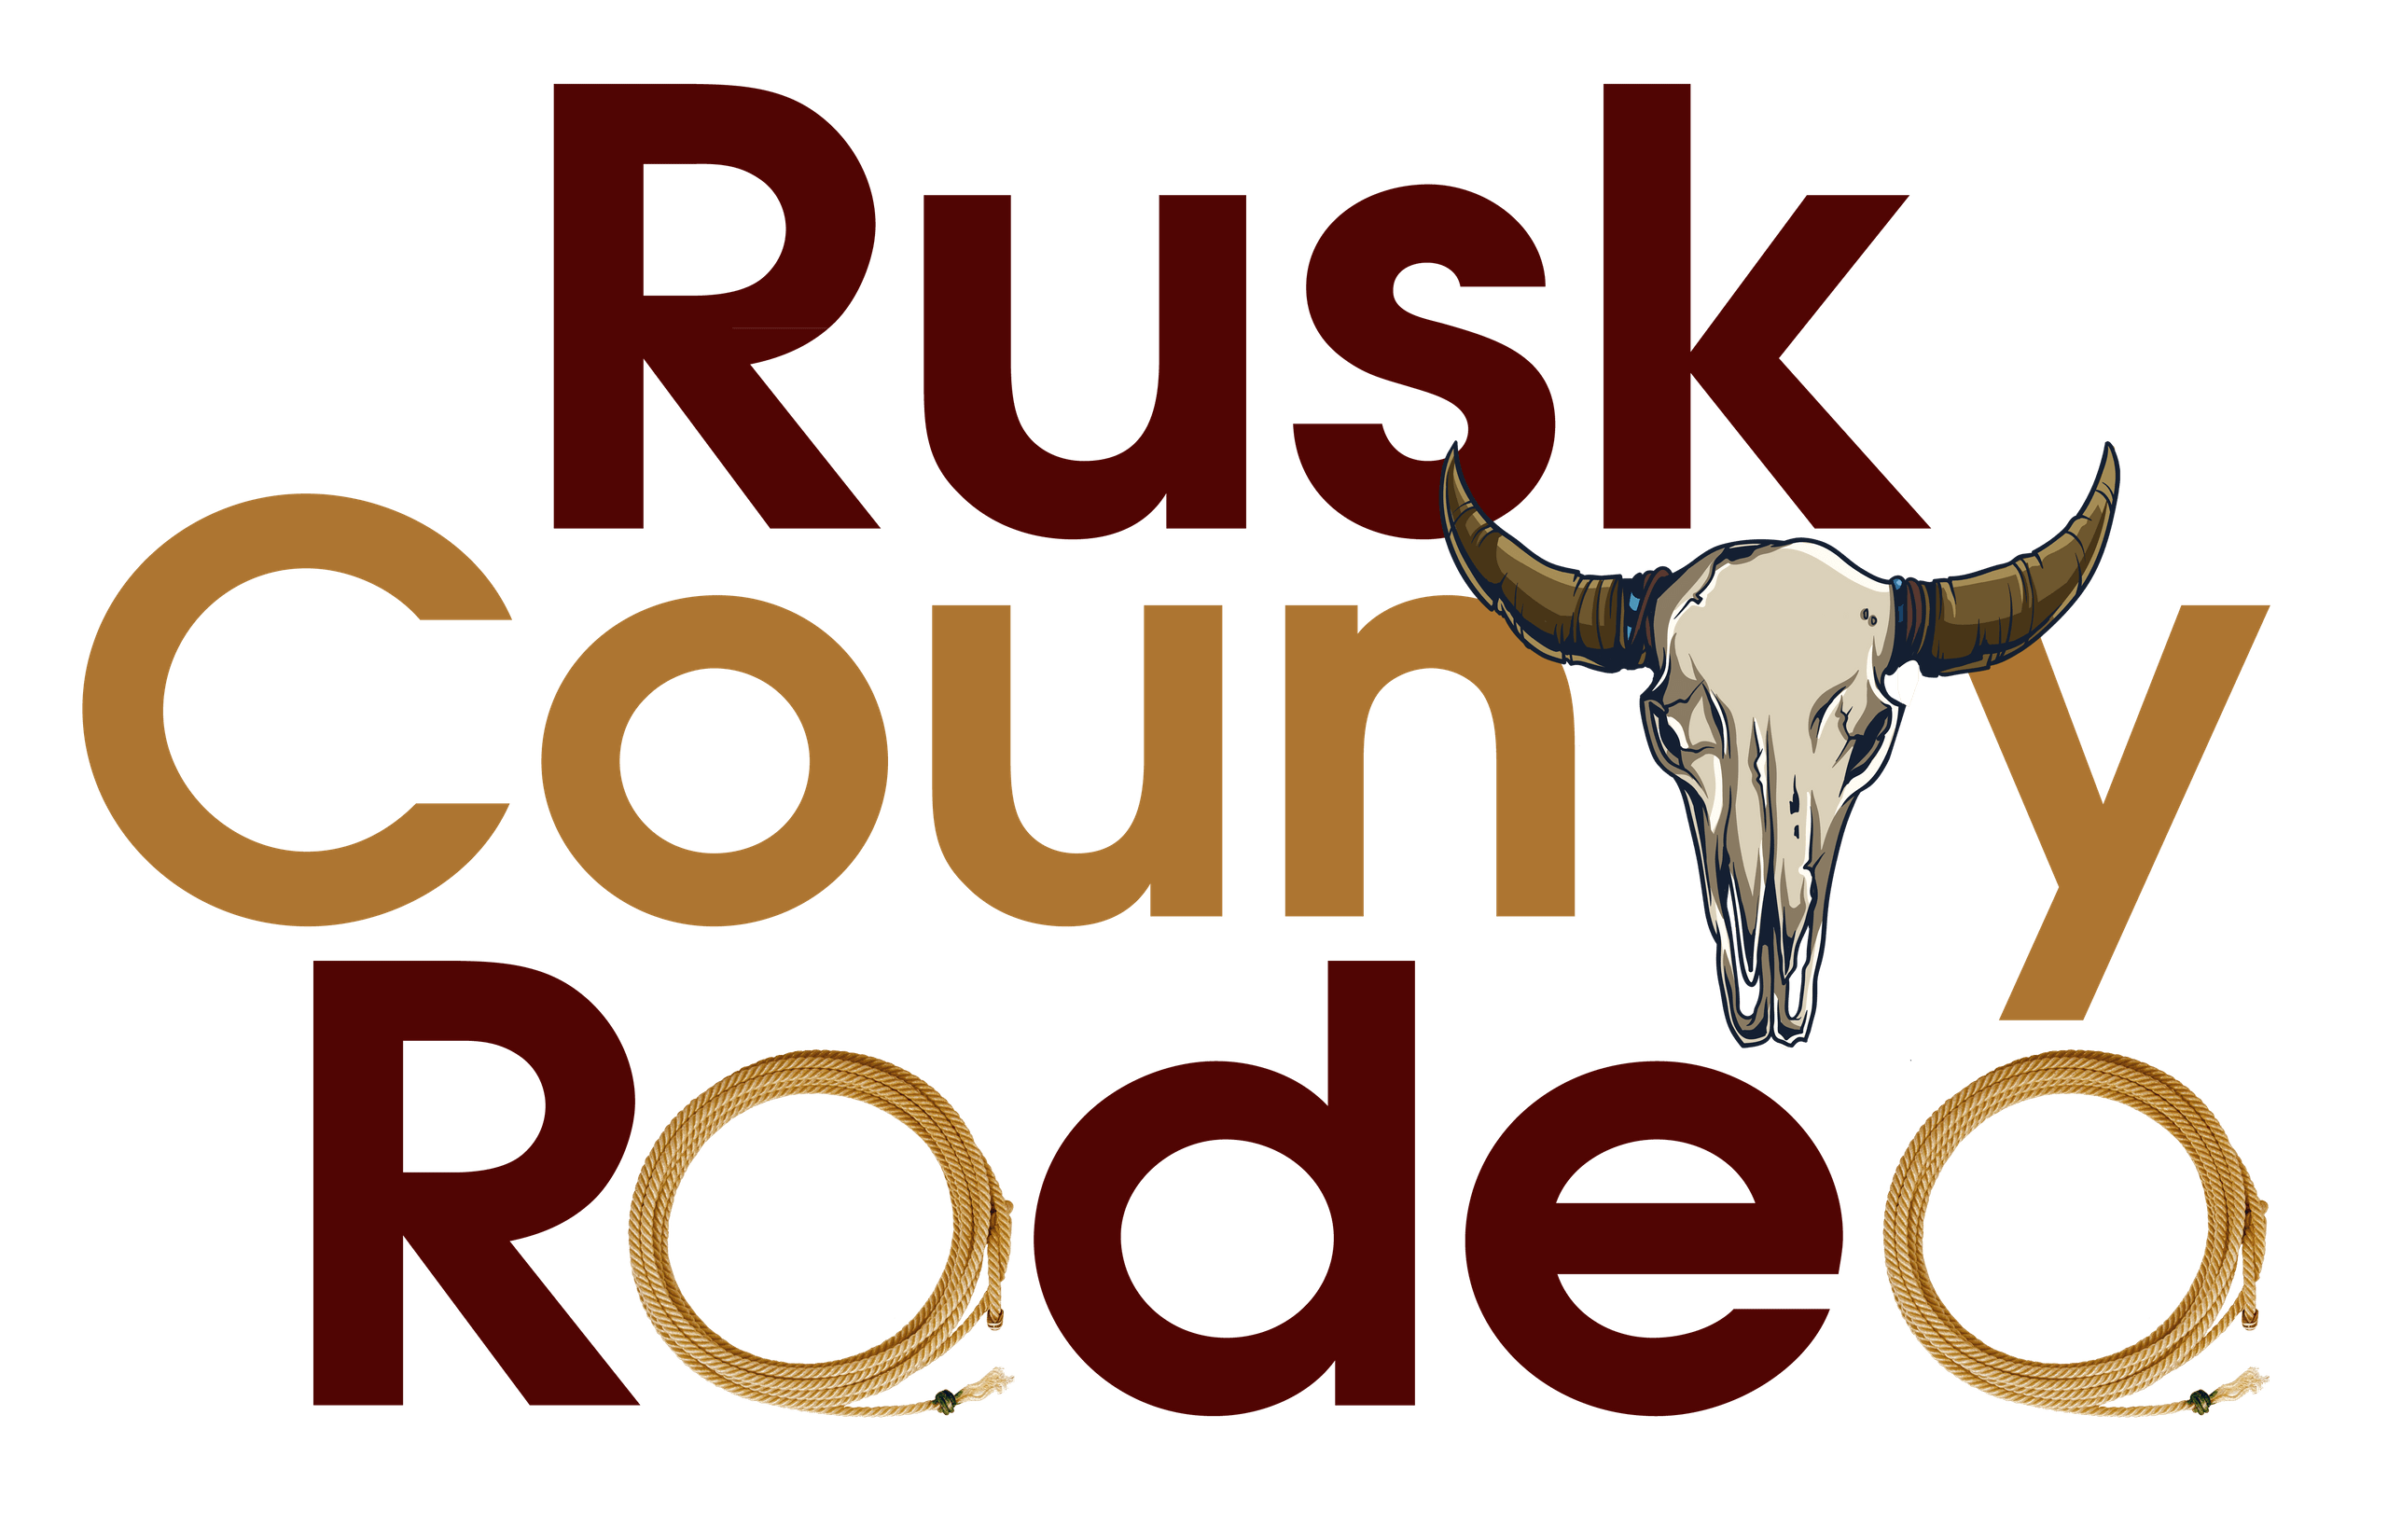 Rusk Logo - RUSK COUNTY RODEO. RUSK COUNTY RODEO